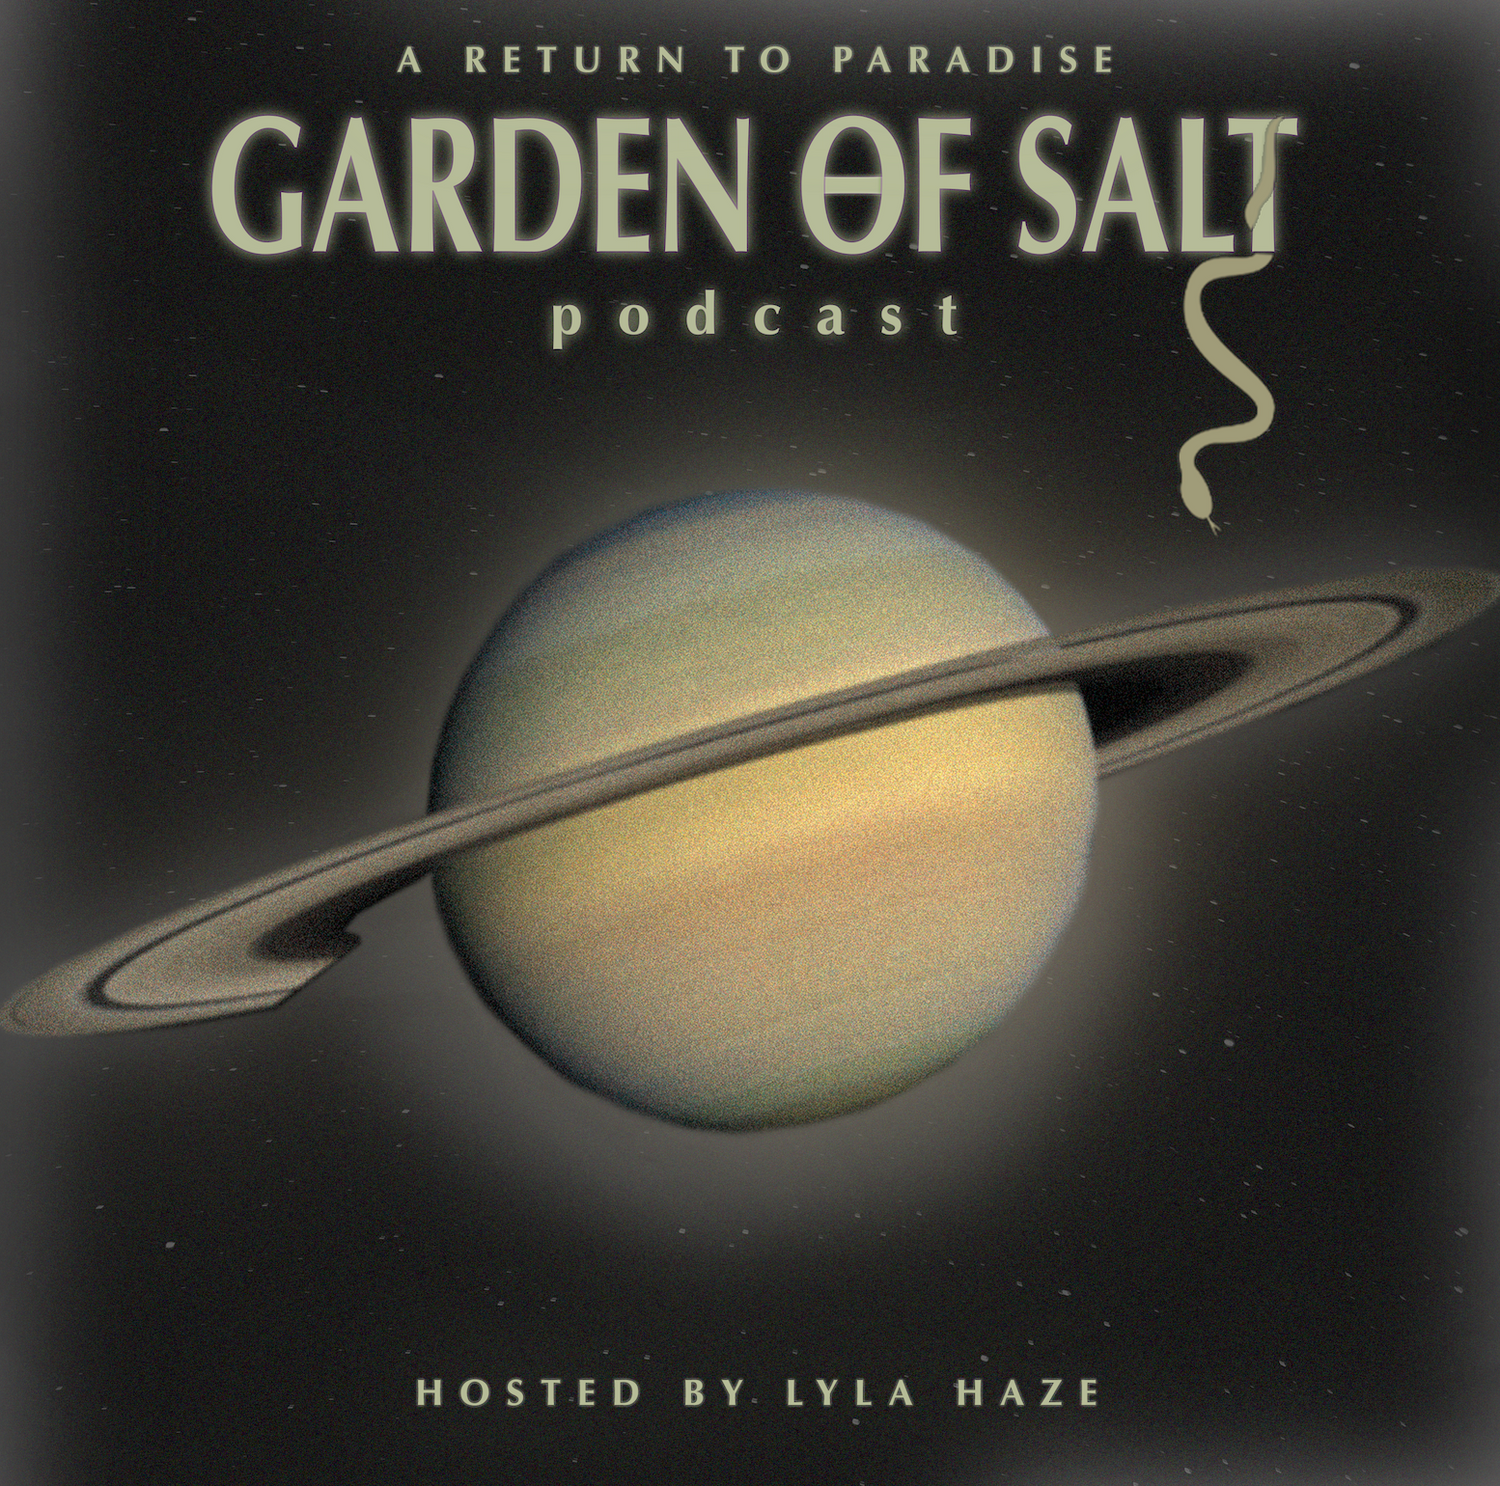 Garden of Salt podcast hosted by Lyla Haze